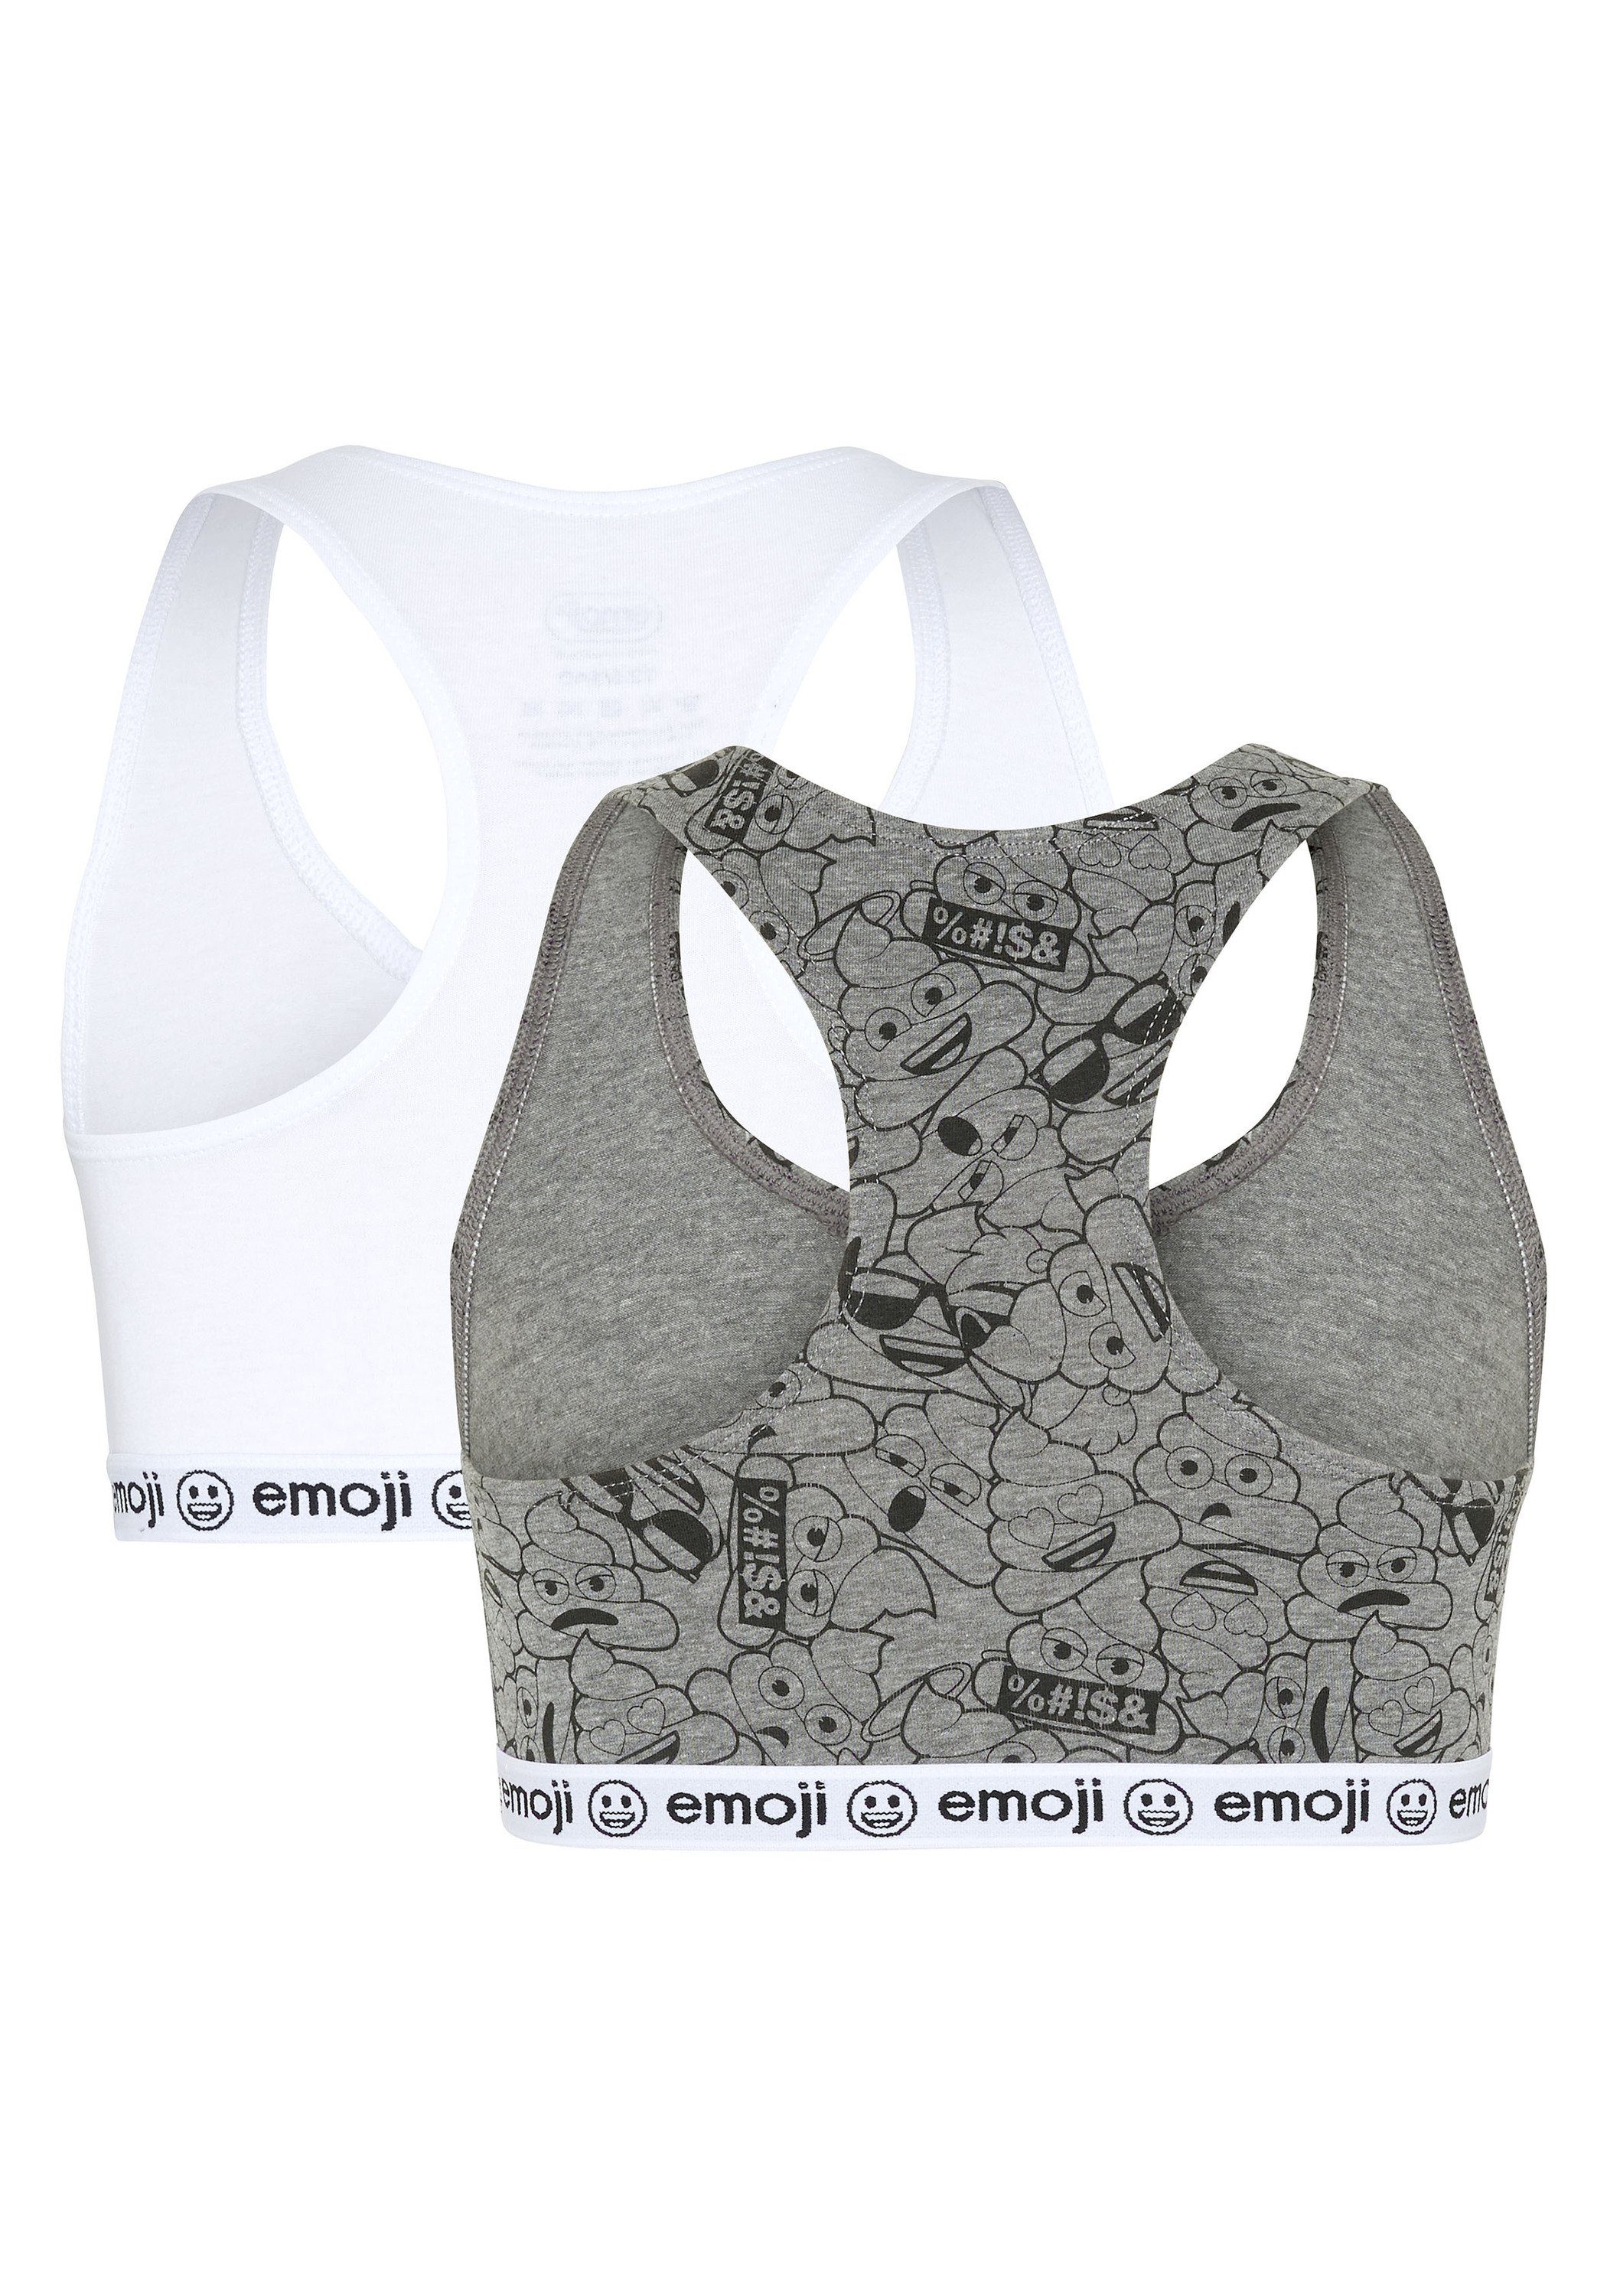 Emoji Teenie-BH im Zweierpack mit Medium elastischem Grey/White 7510 Unterbrustgummi